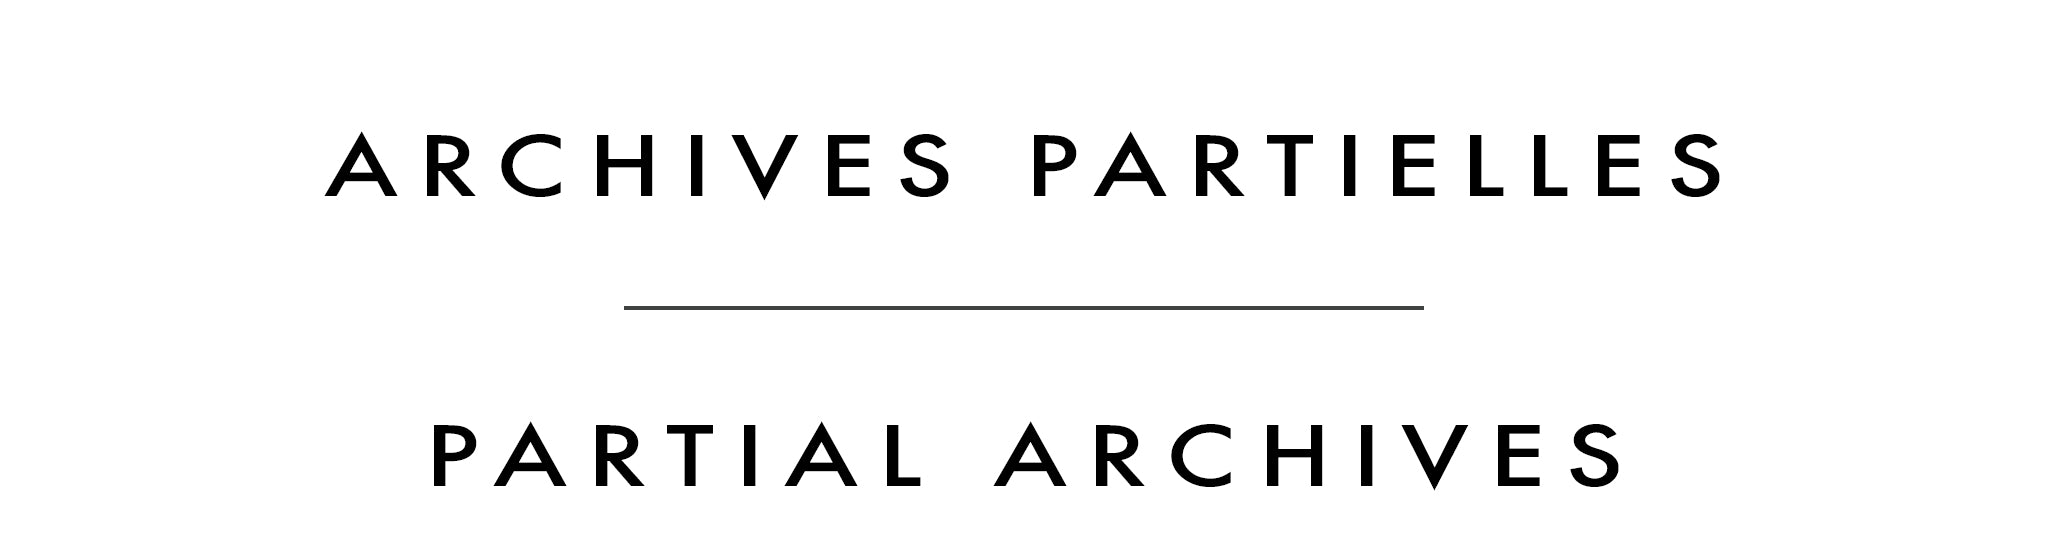 Archives partielles | Partial Archives | Madeleine Tailleur